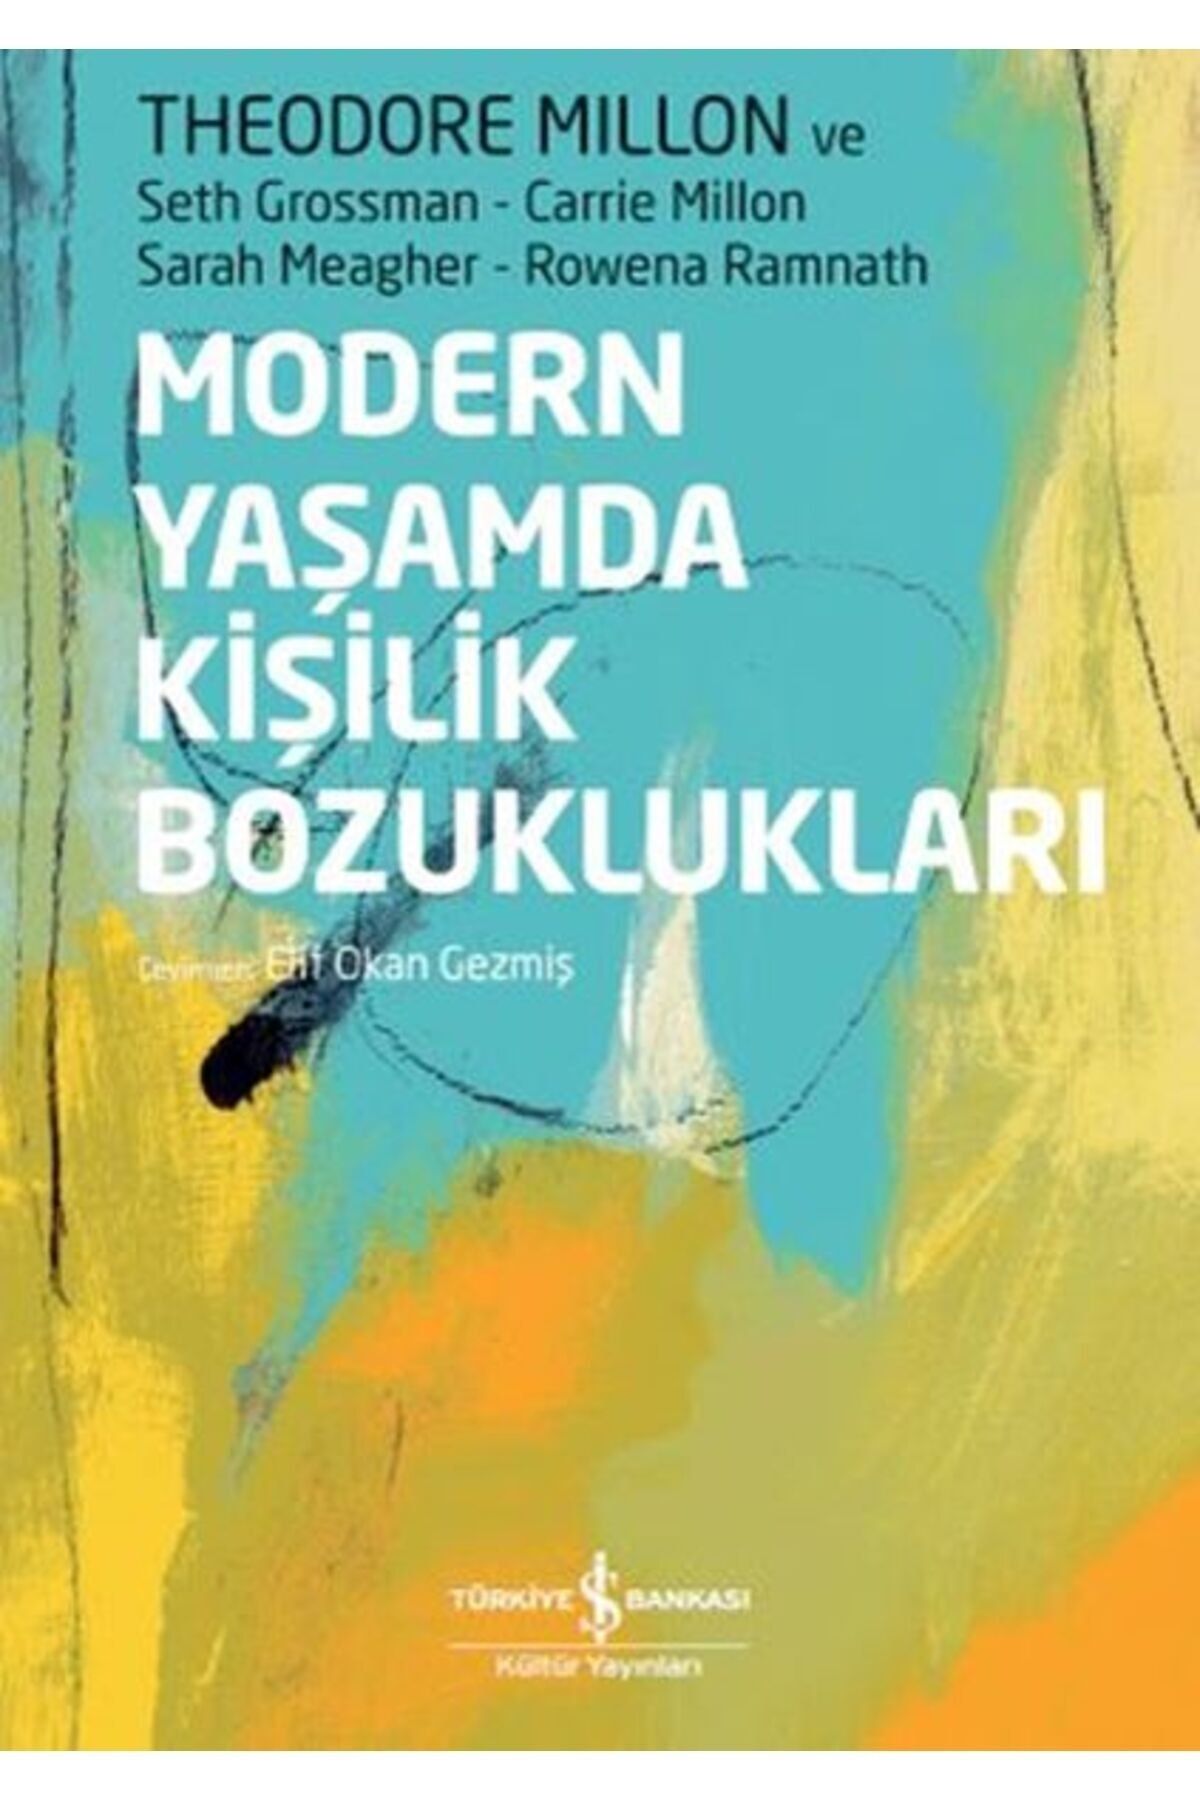 Türkiye İş Bankası Kültür Yayınları Modern Yaşamda Kişilik Bozuklukları